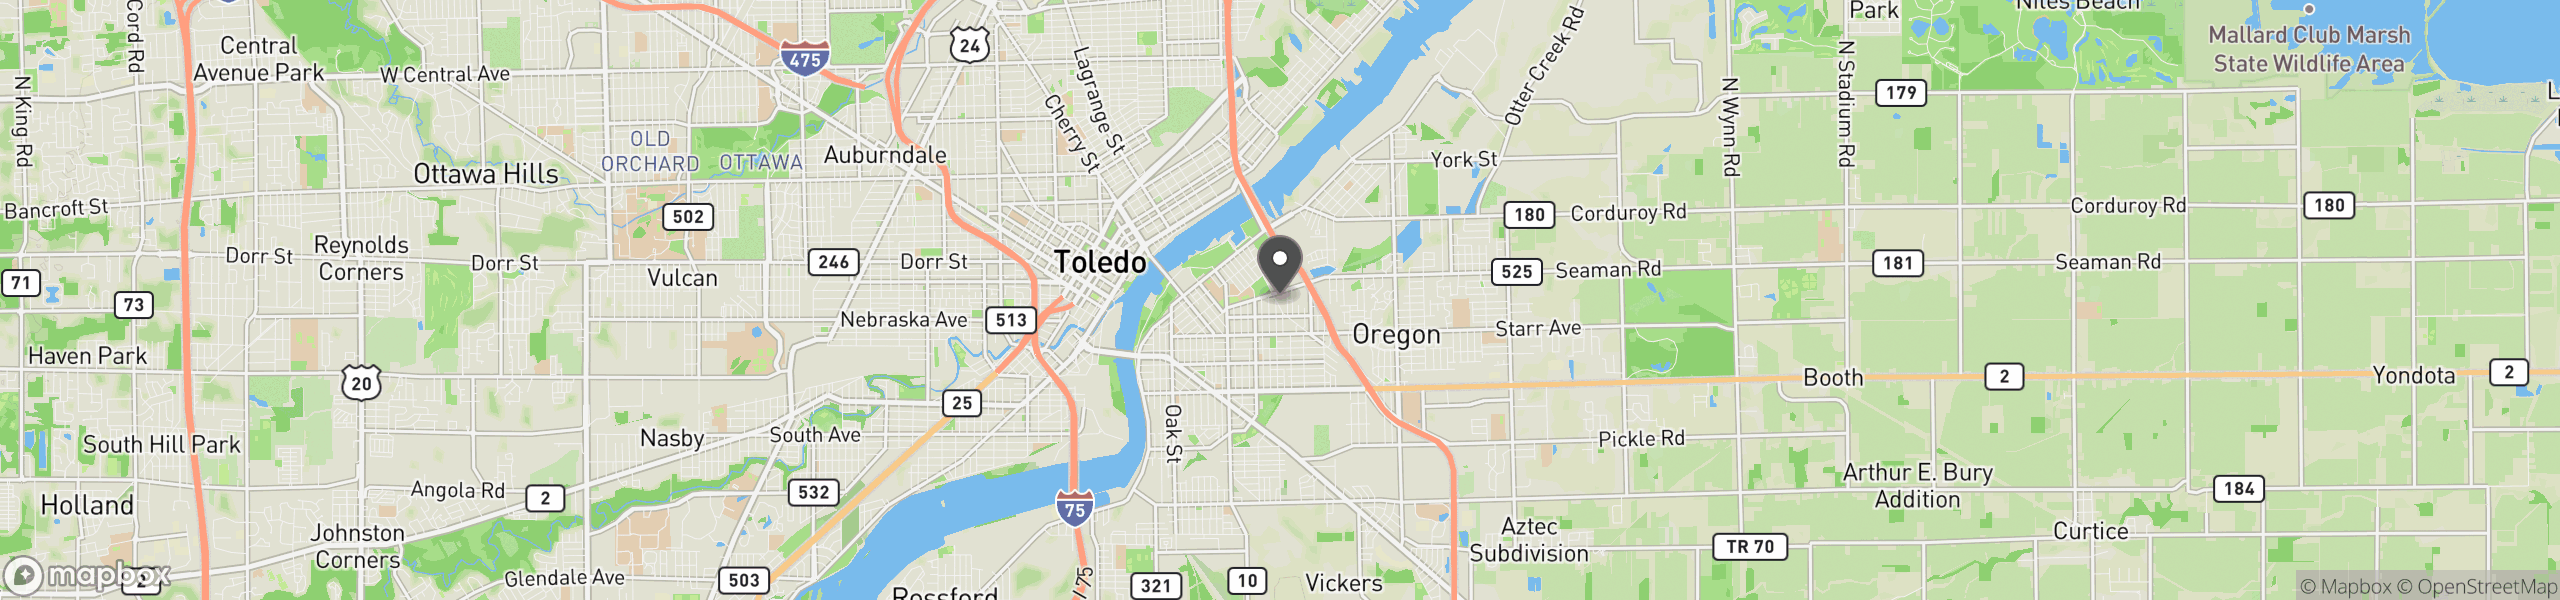 Toledo, OH 43605